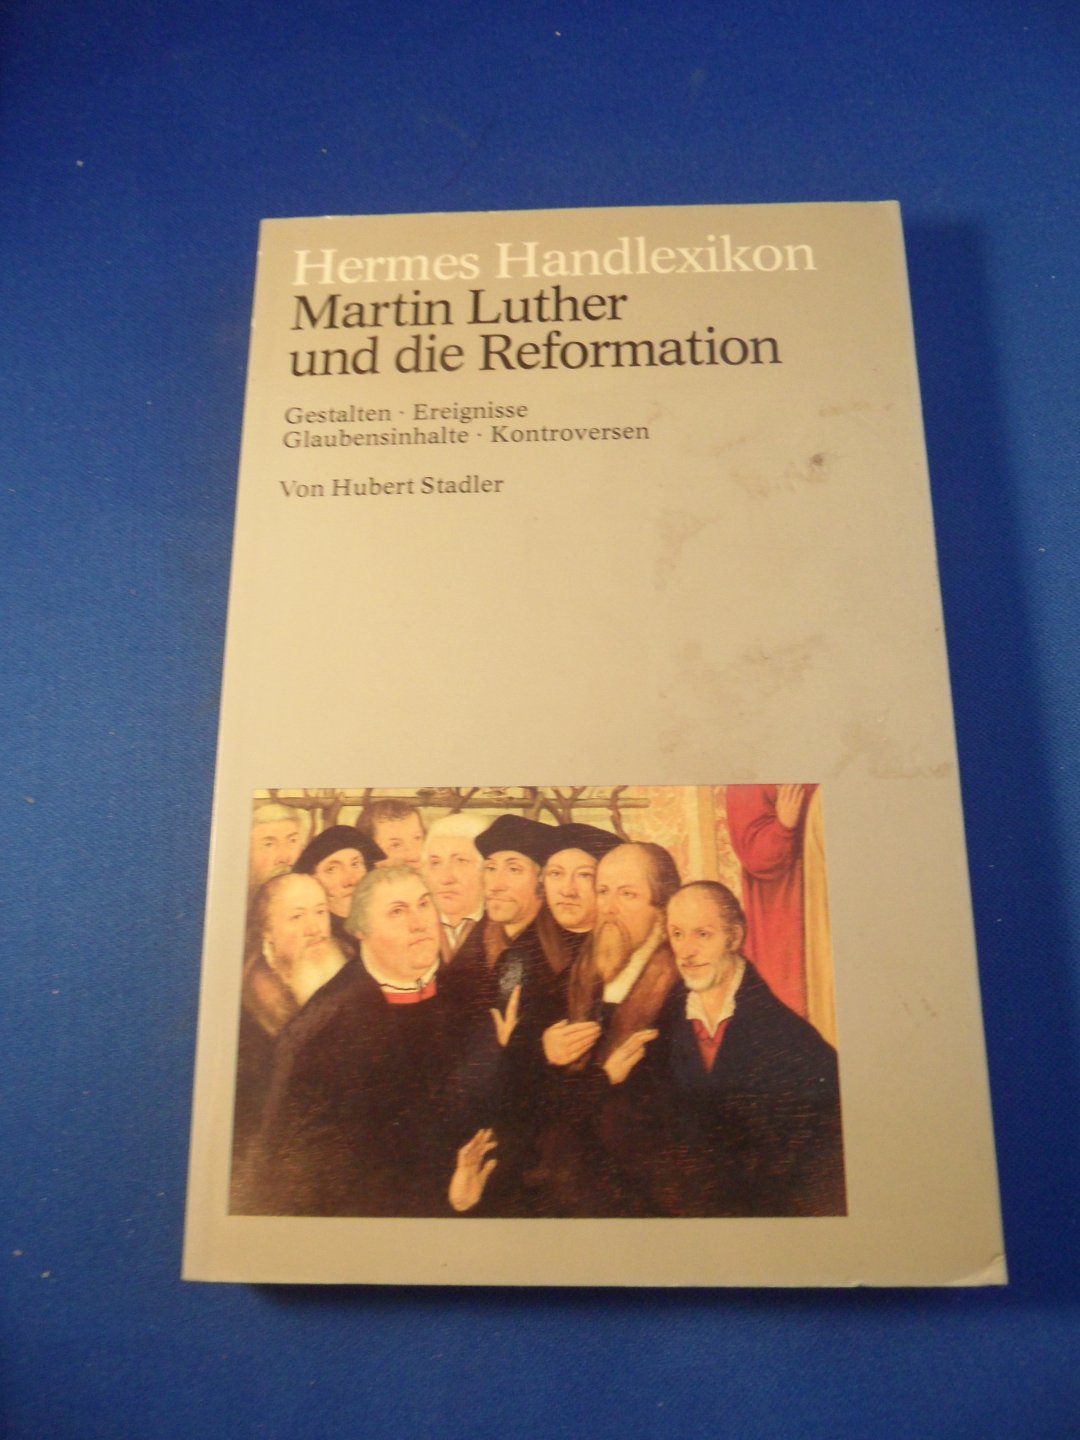 Stadler, Hubert - Hermes Handlexikon. Martin Luther und die Reformation, Gestalten, Ereignisse, Glaubensinhalte, Kontroversen